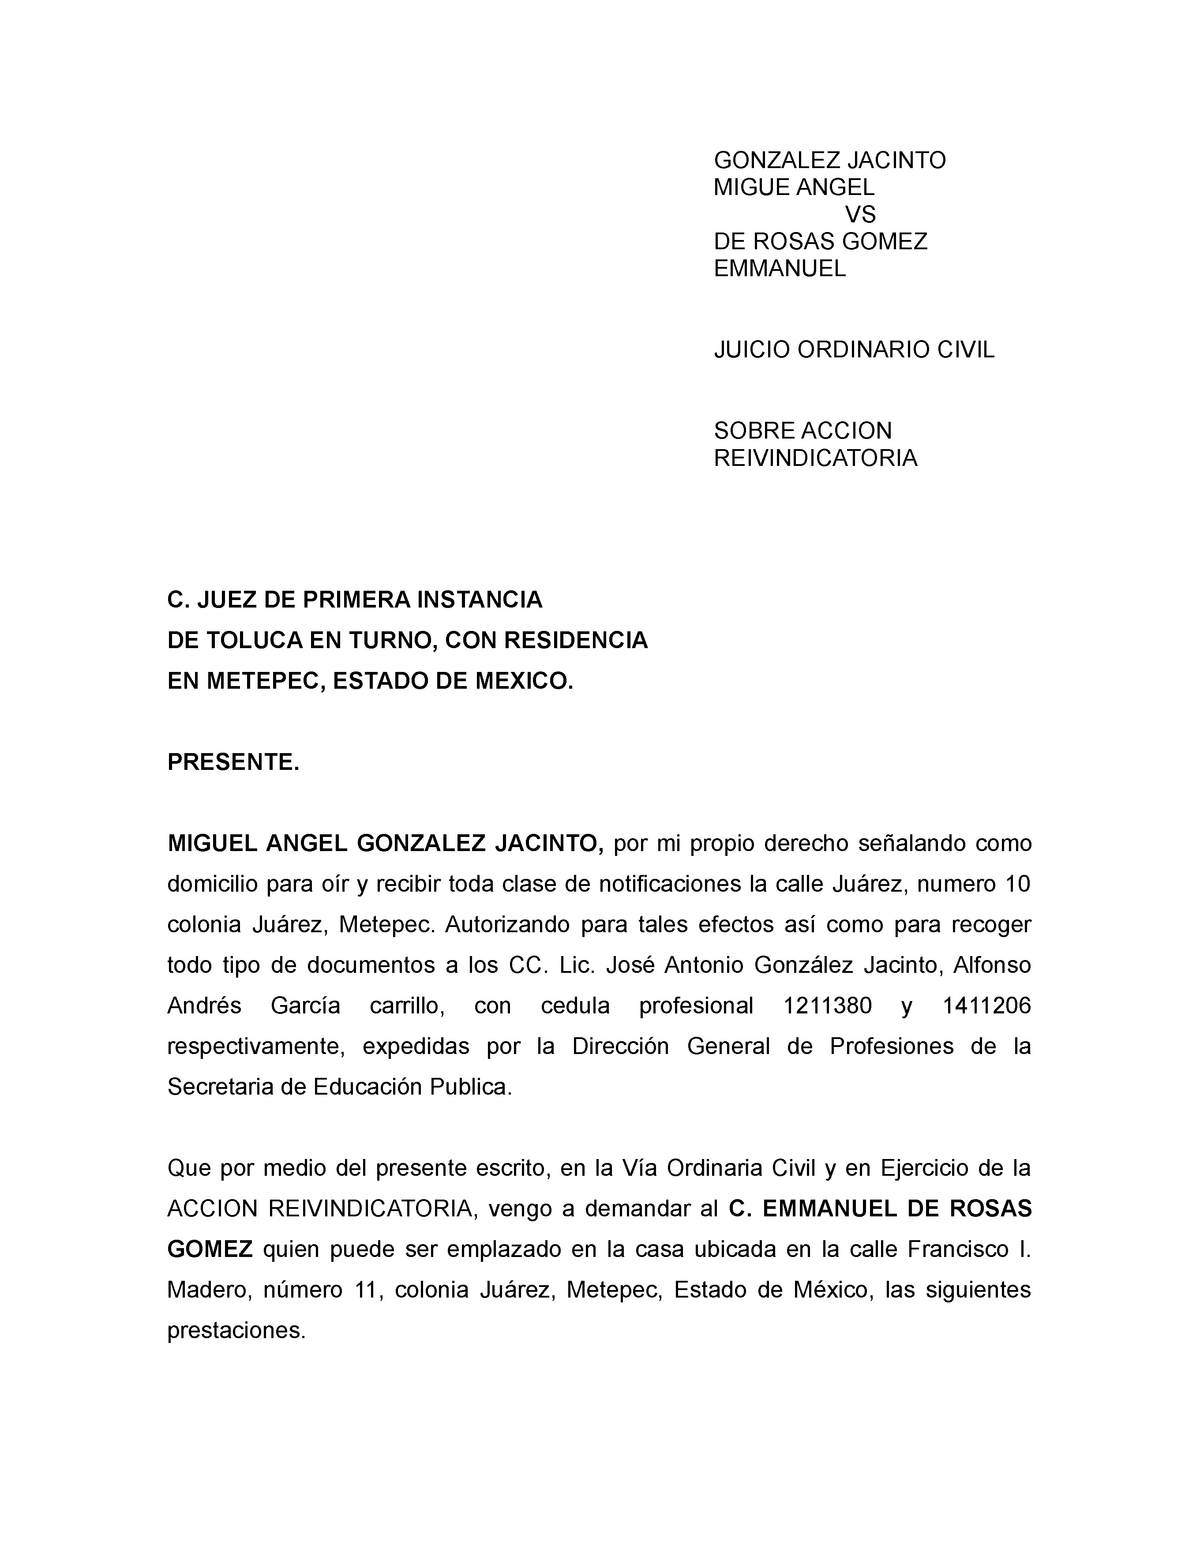 Demanda Accion Reivindicatoria - C. JUEZ DE PRIMERA INSTANCIA DE TOLUCA EN  TURNO, CON RESIDENCIA EN - Studocu